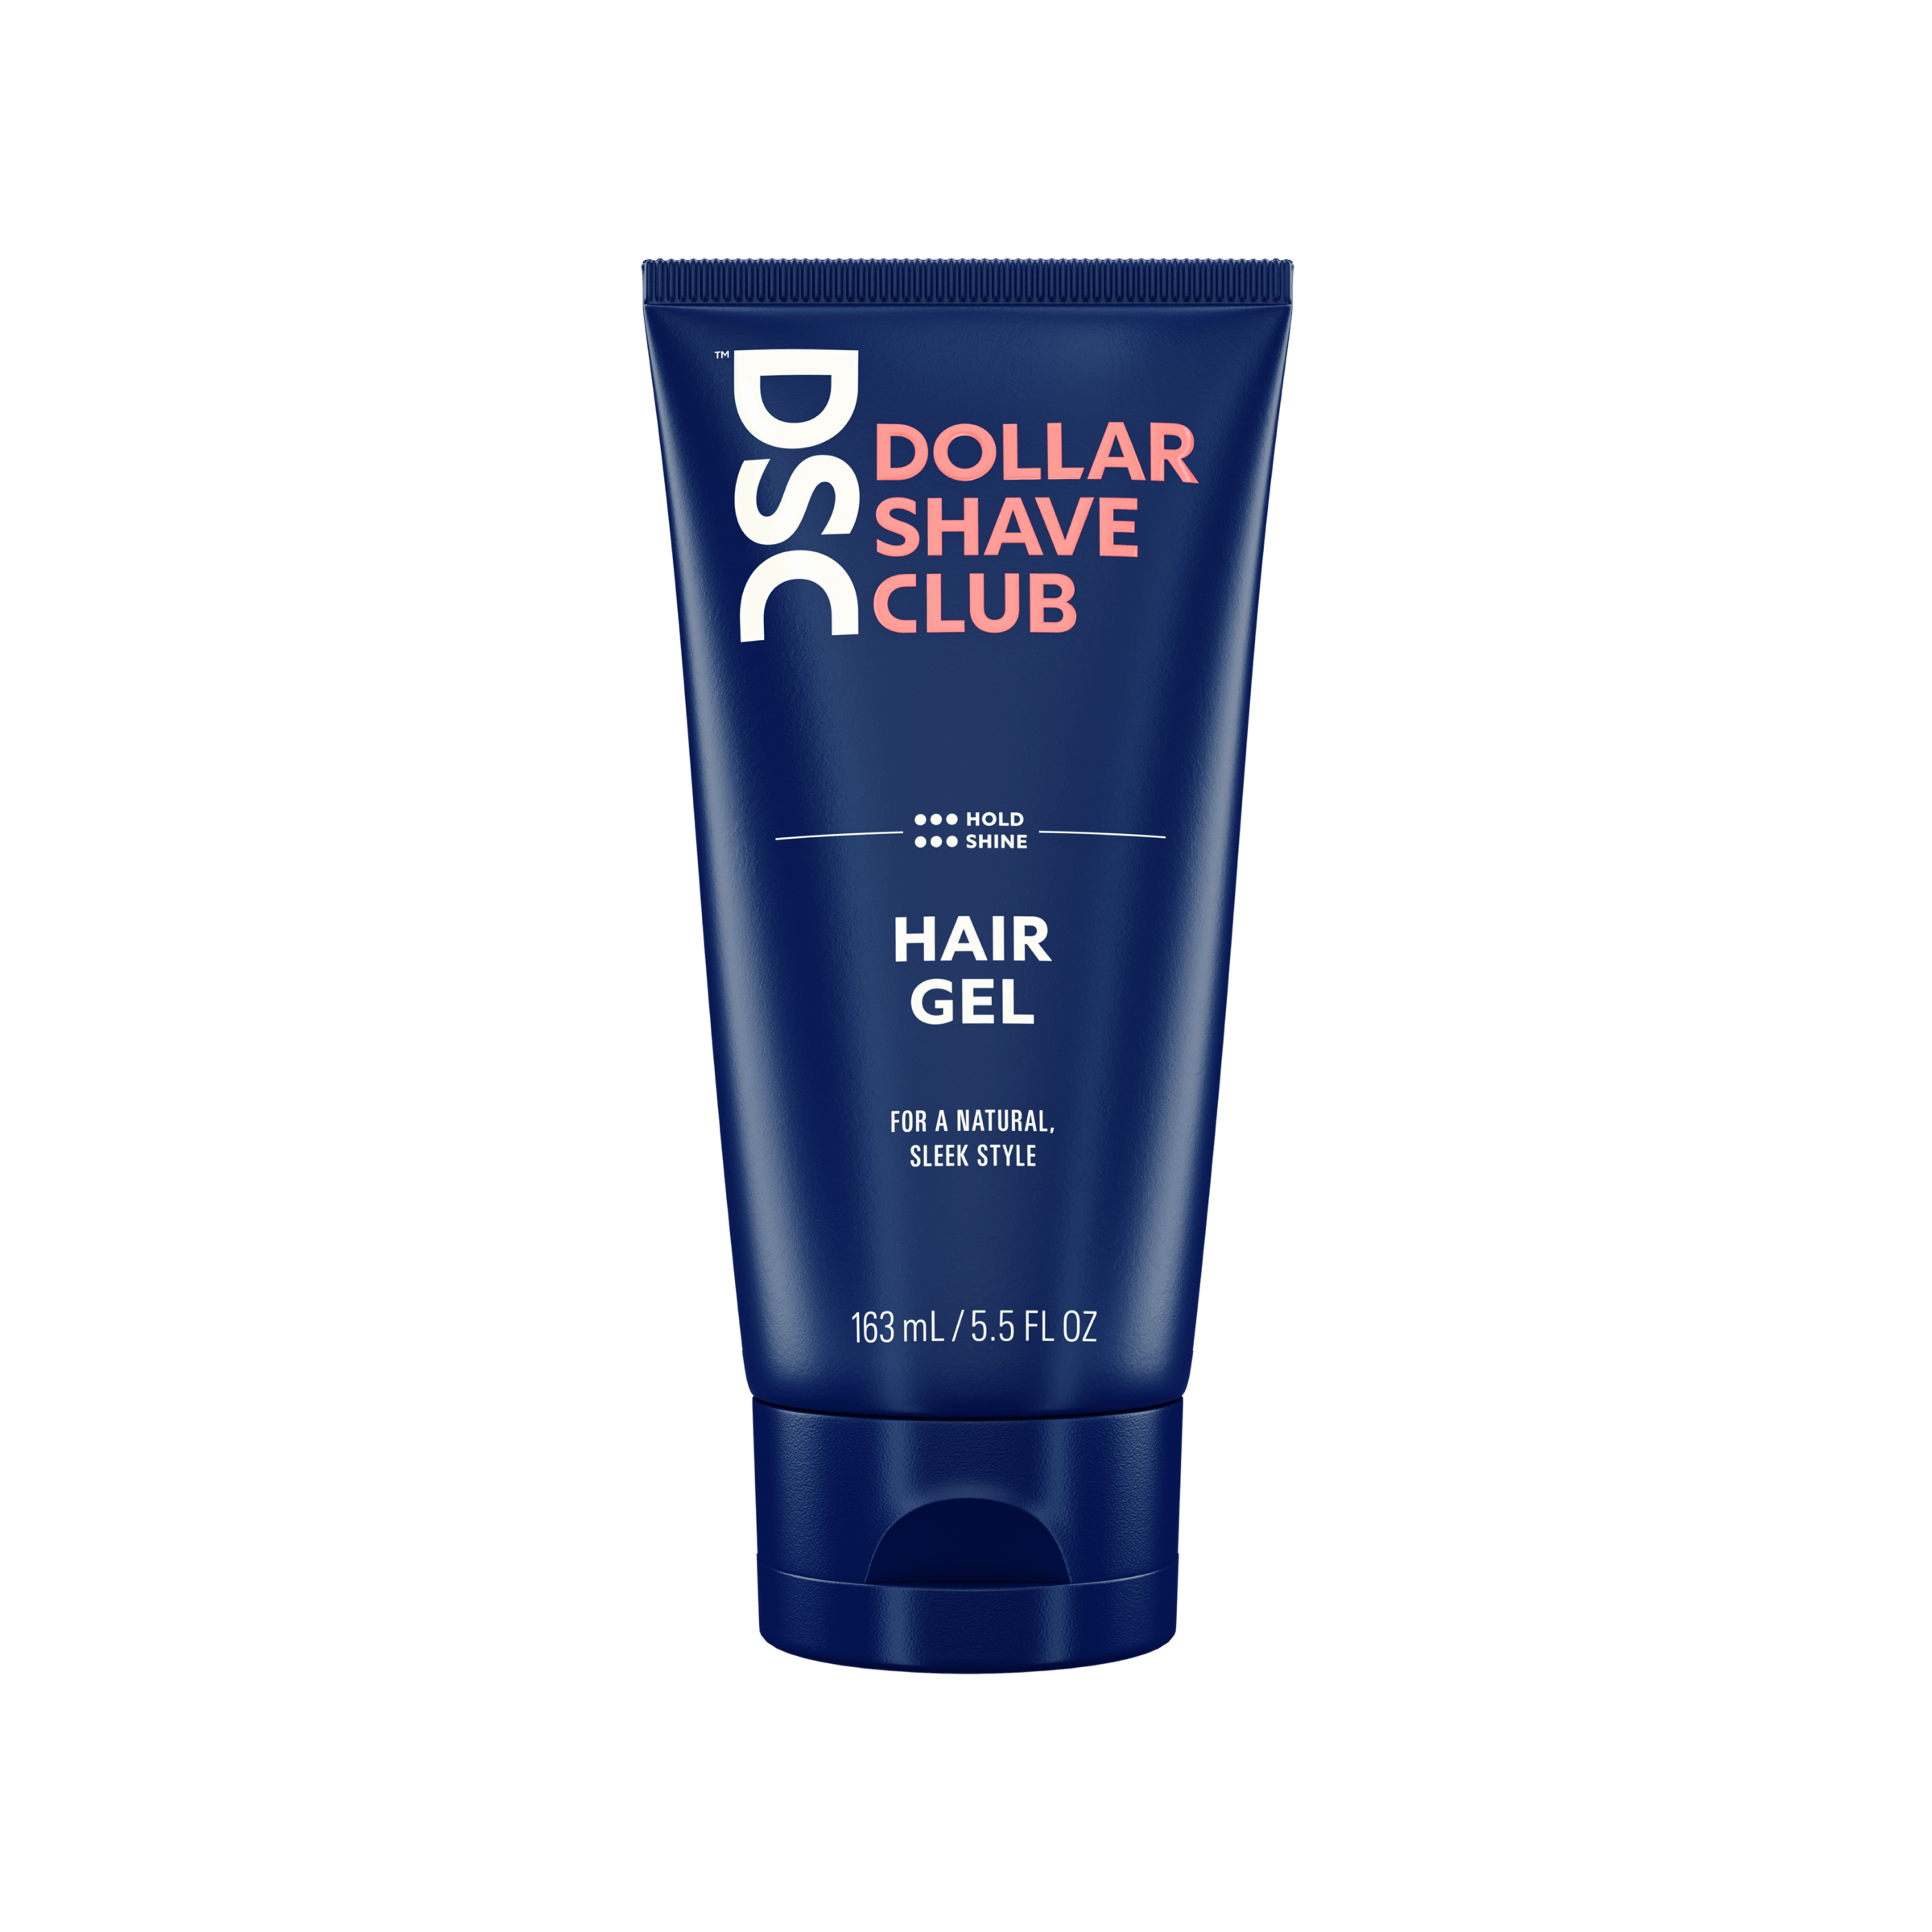 Hair Gel – Dollar Shave Club